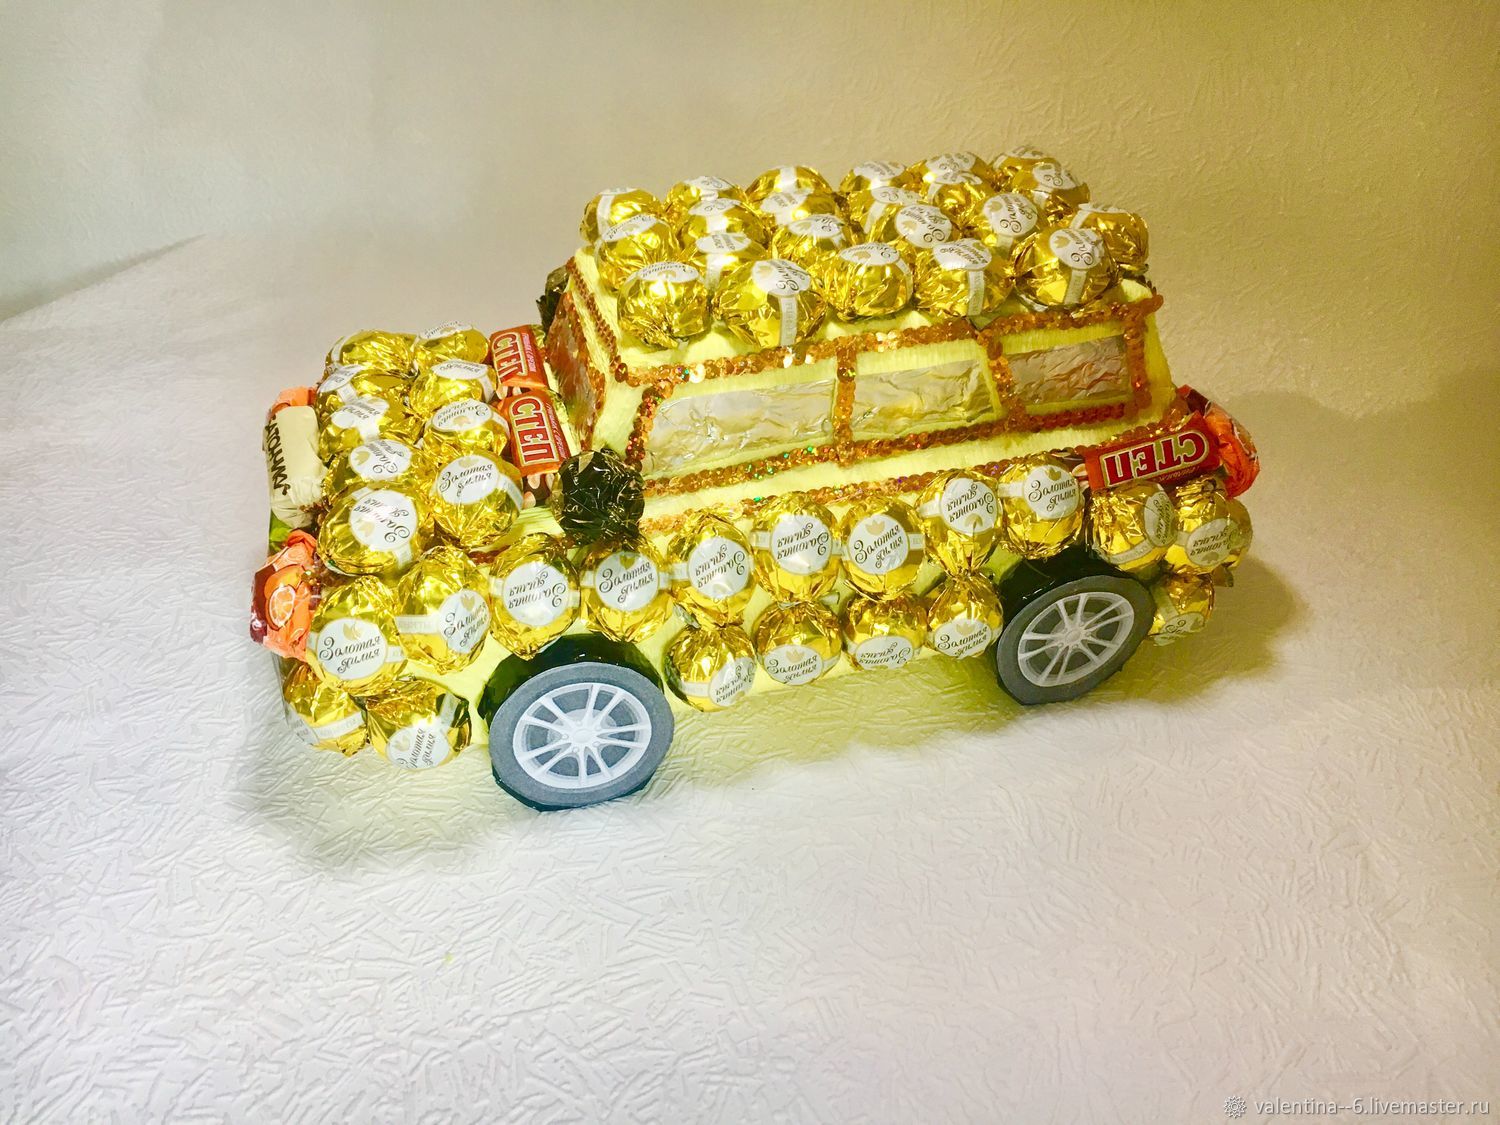 Машина из конфет своими руками, изготовление и различные мастер-классы её изготовления